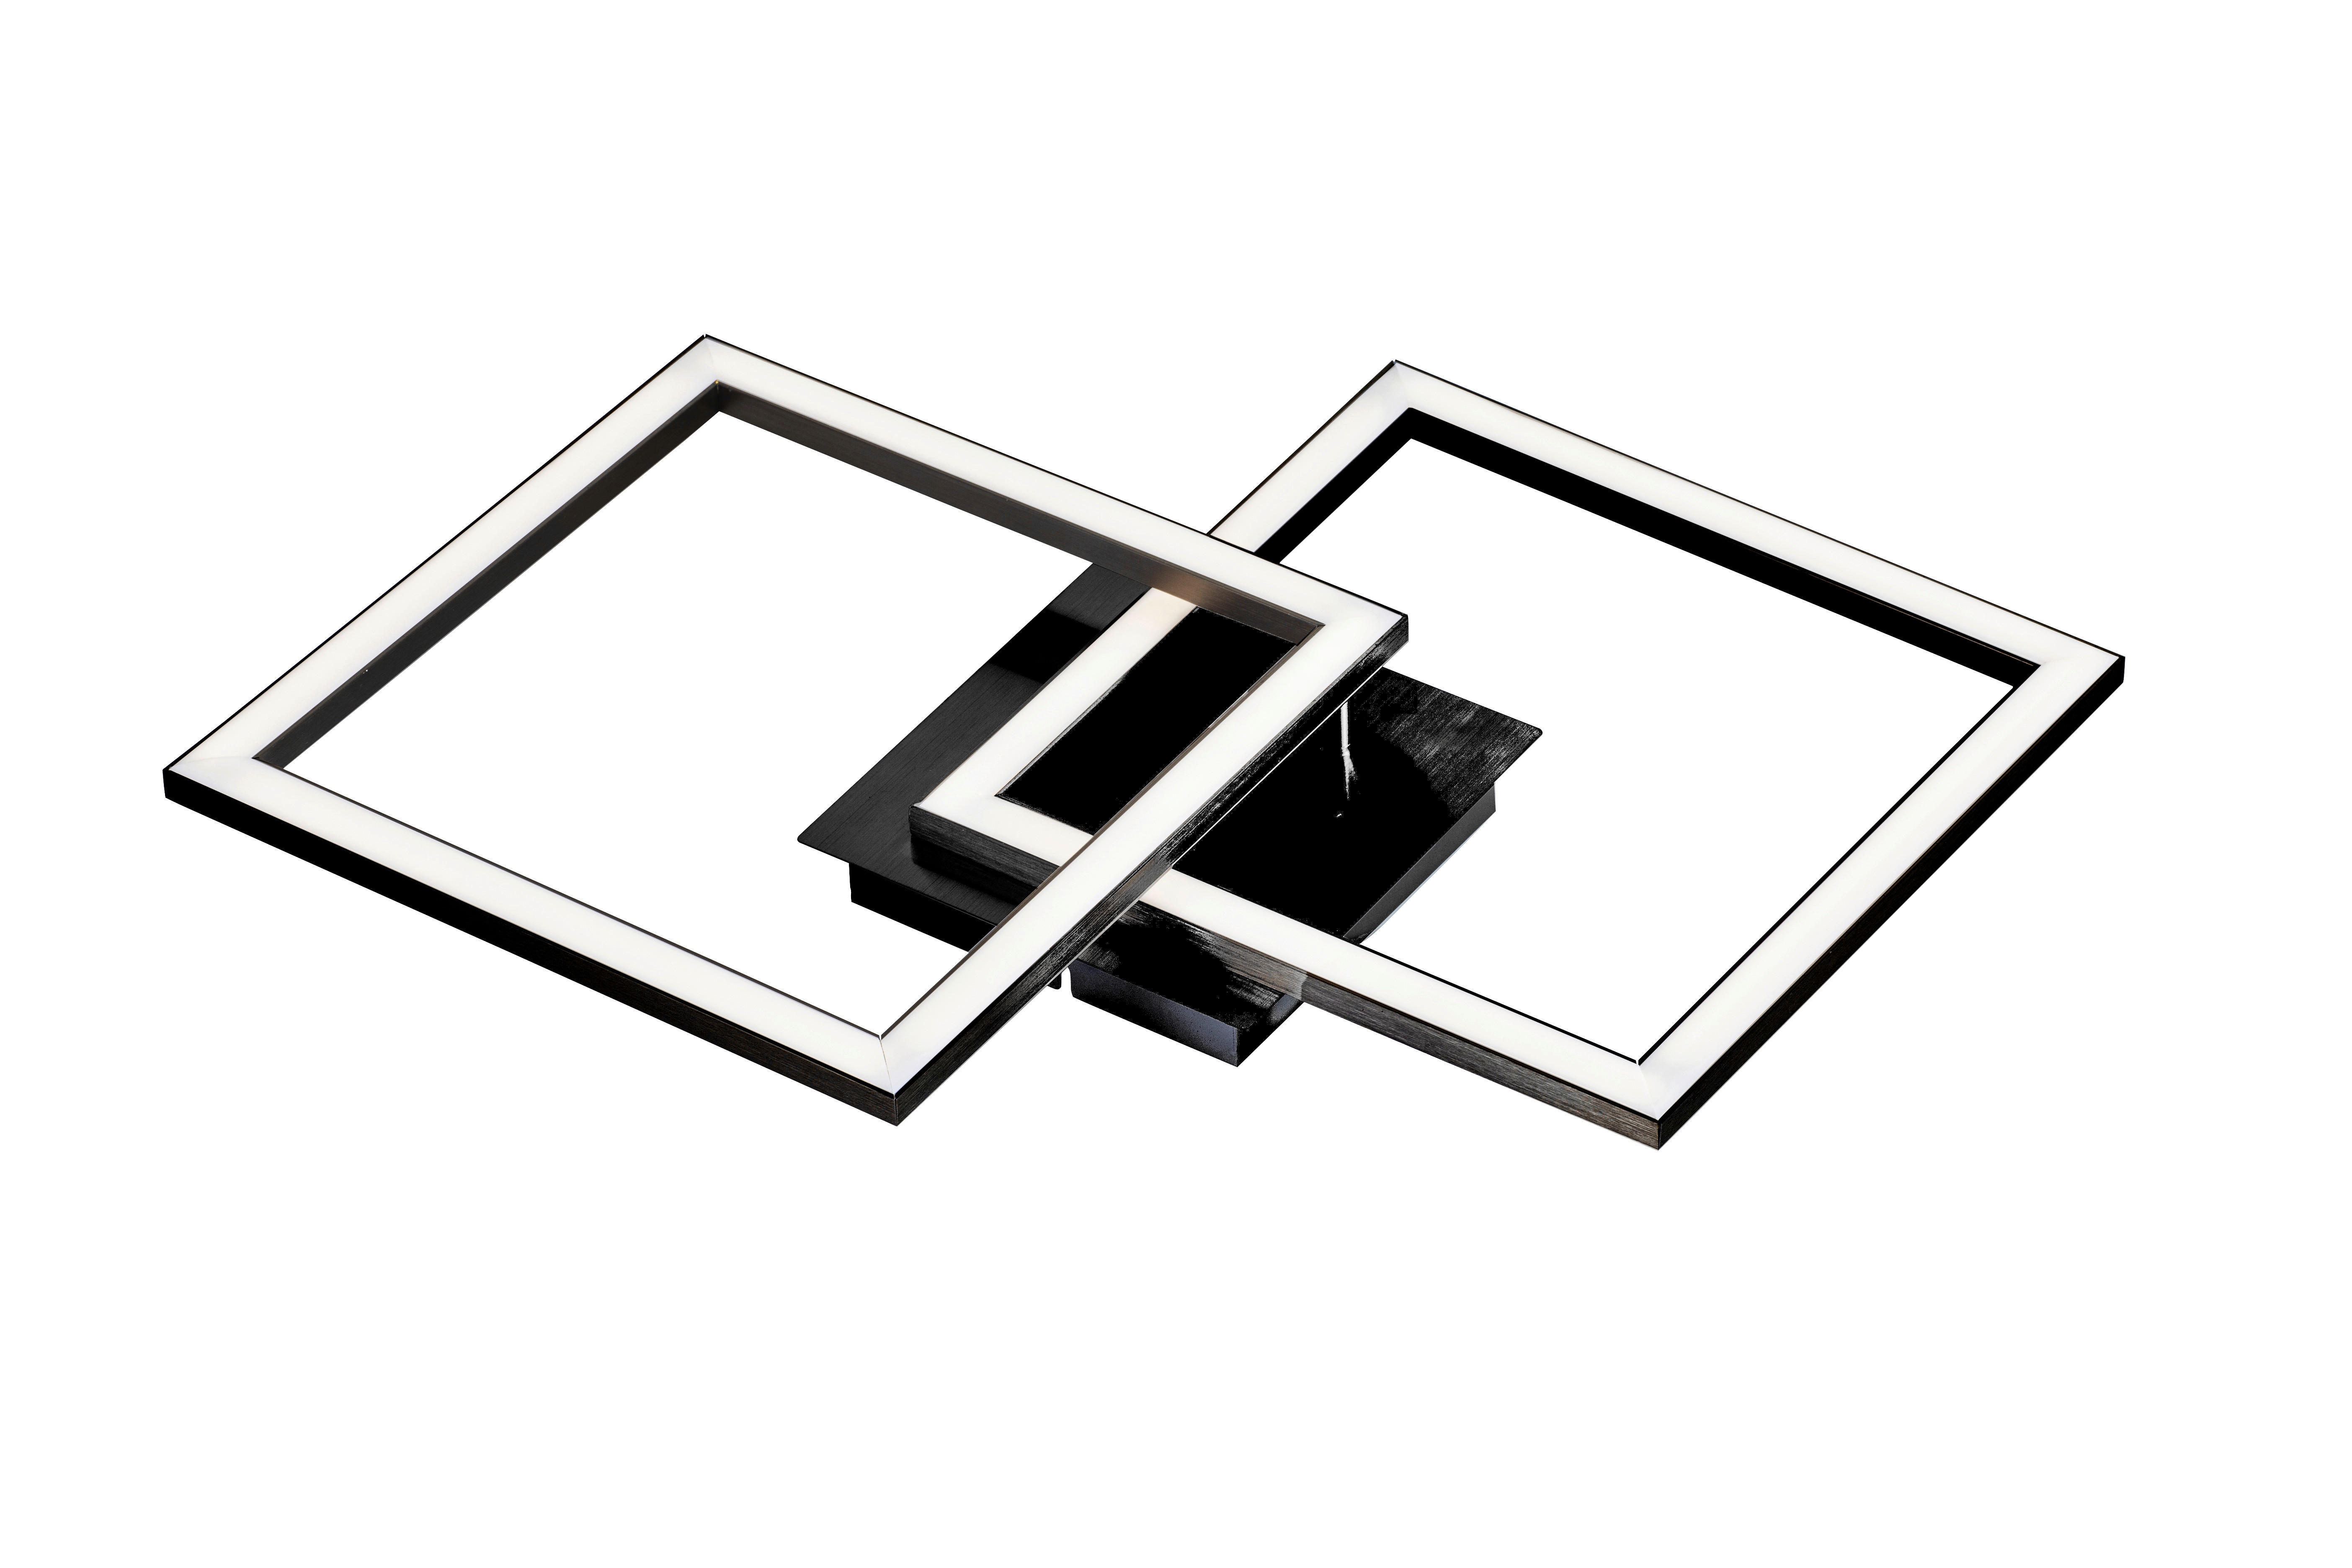 LED-DECKENLEUCHTE  - Schwarz/Weiß, LIFESTYLE, Kunststoff/Metall (56,7/35/5,5cm) - Boxxx